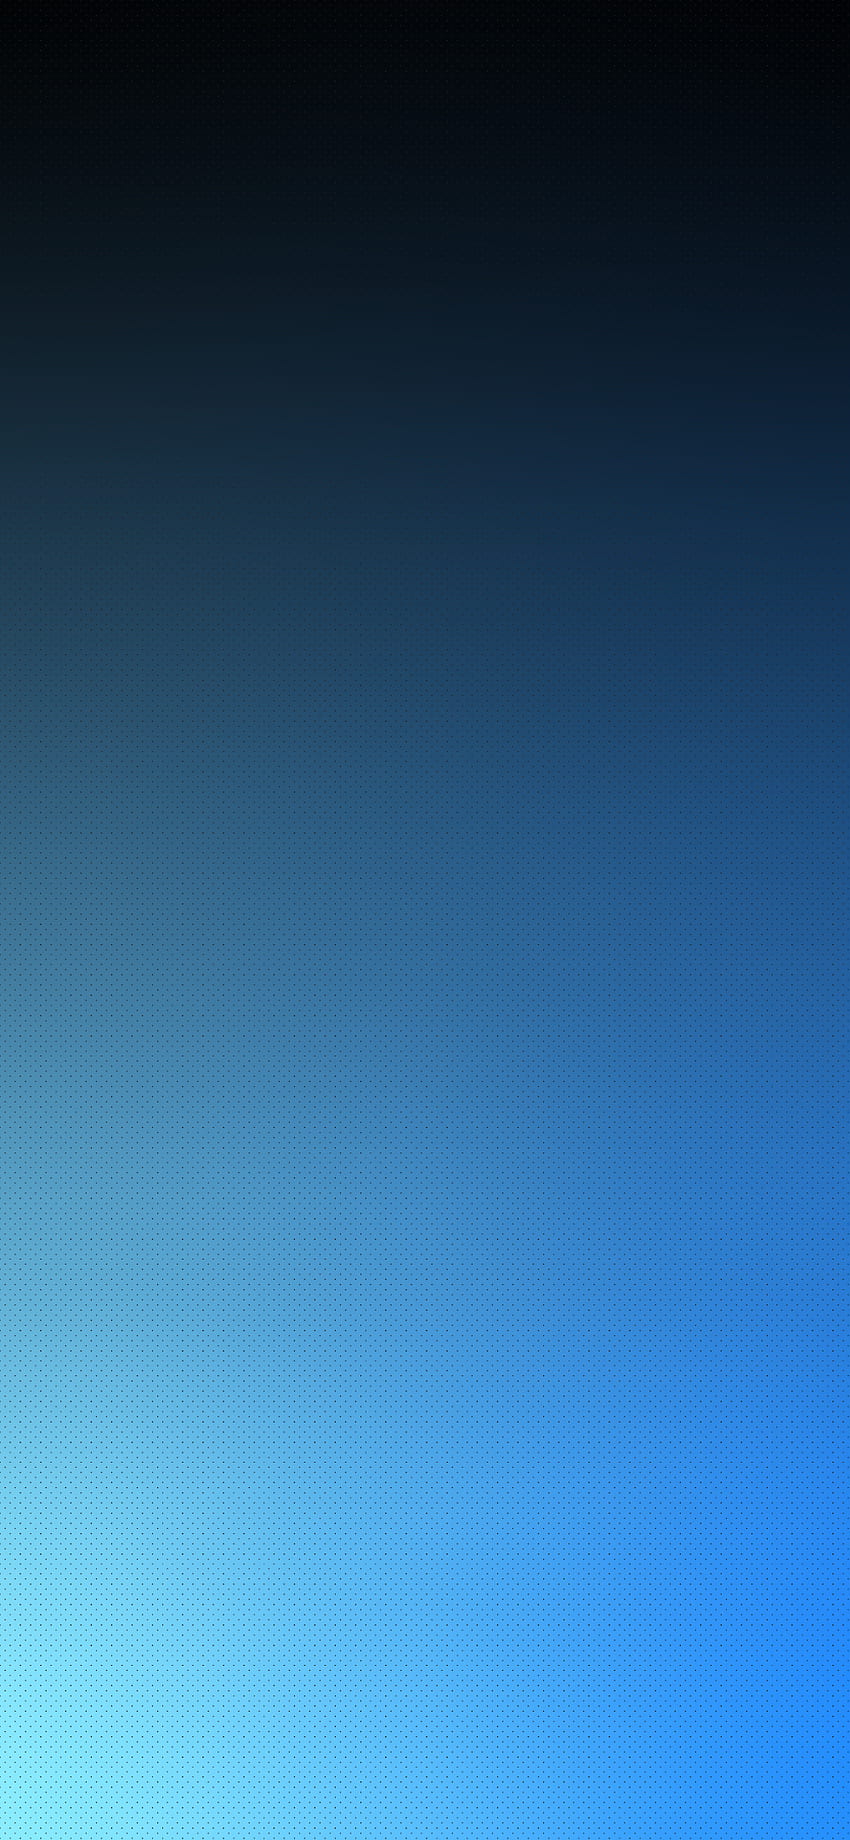 Gradiente oscuro azul marino azul polvoriento. iPhone azul, degradado de iPhone, azul, degradado de color oscuro fondo de pantalla del teléfono